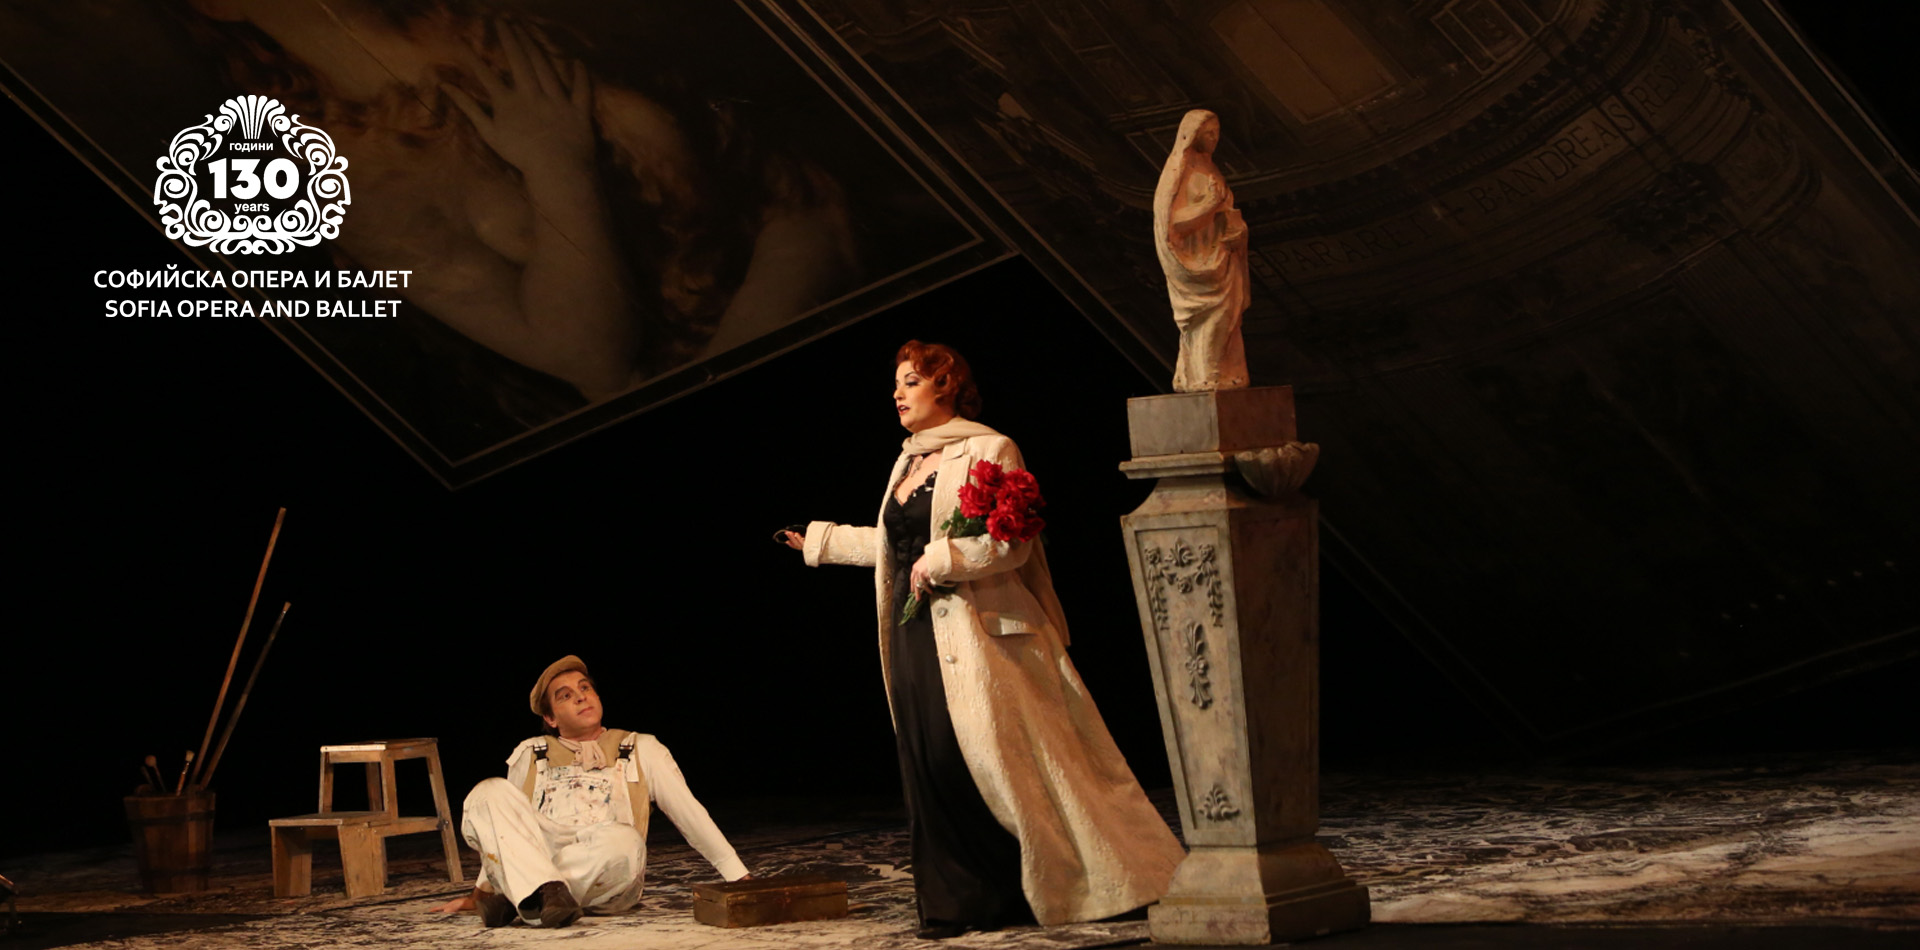 Сопраното Таня Иванова ще се превъплъти в ролята на Аида през април в Софийската опера